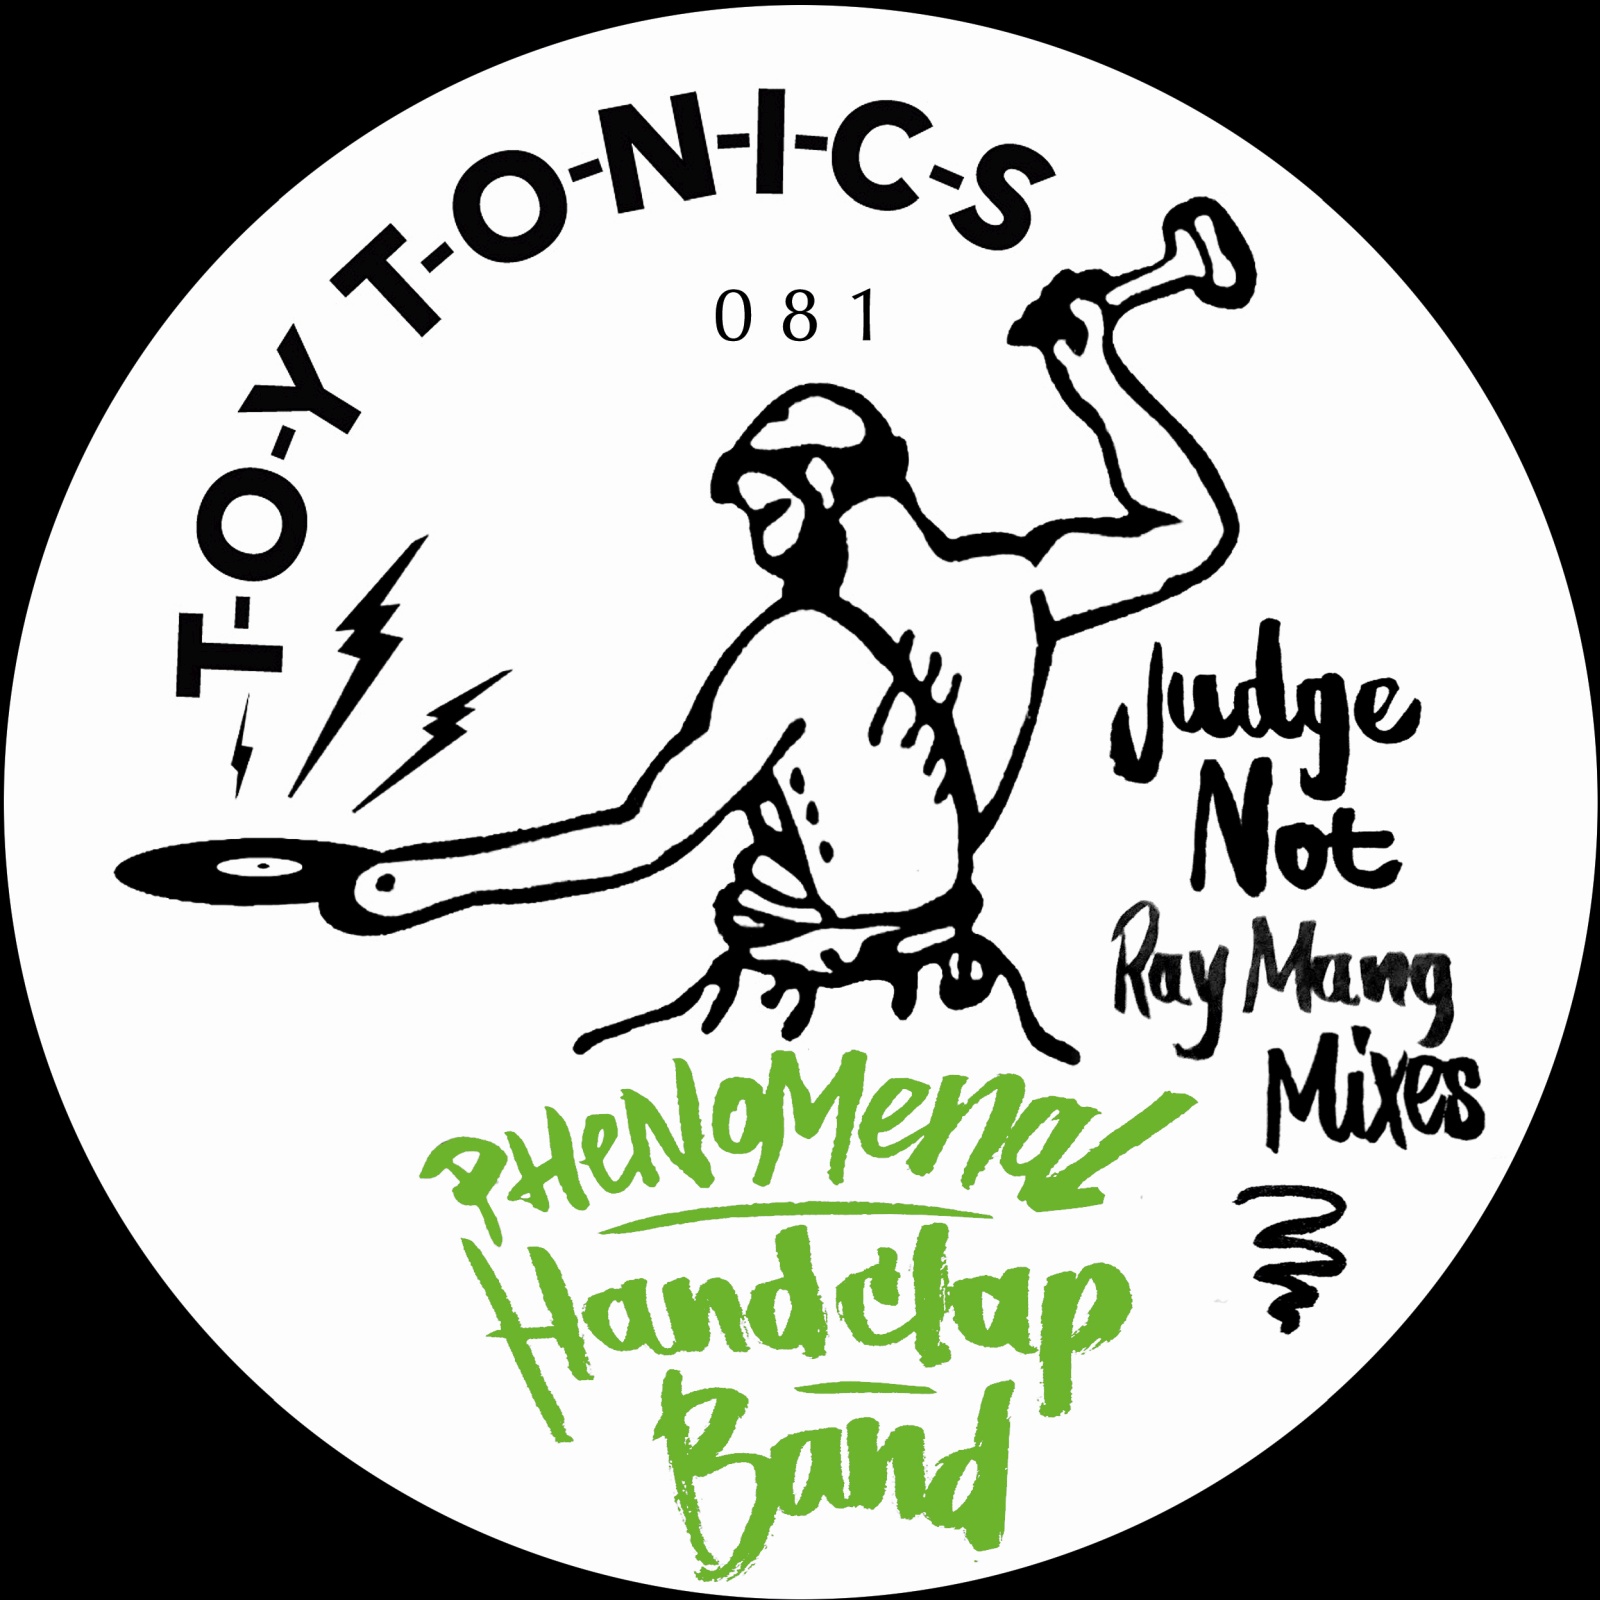 Phenomenal Handclap Band - Judge Not (Ray Mang Mixes) [TOYT081]